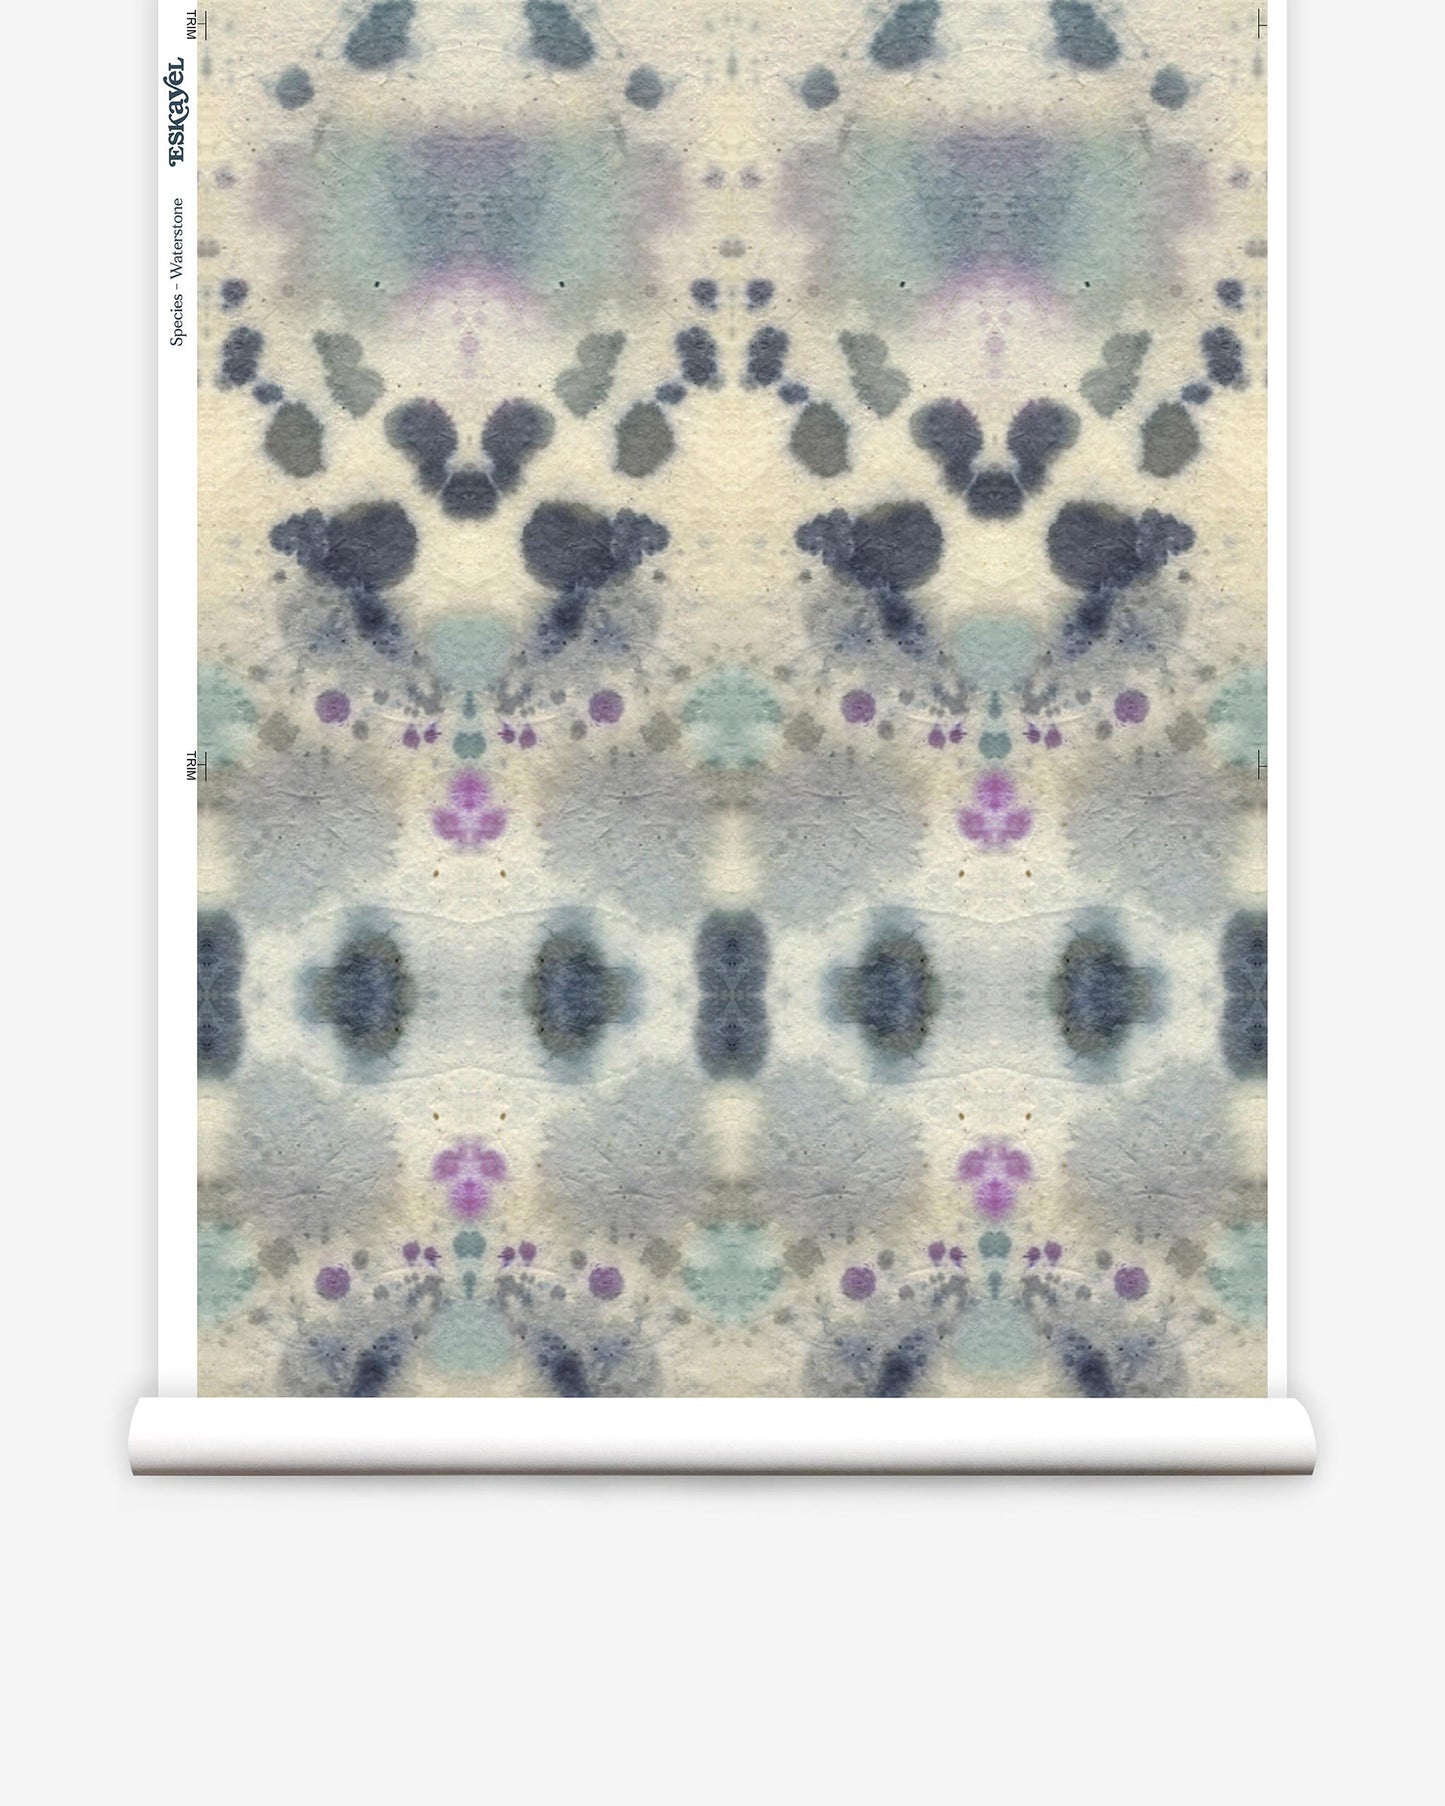 Species Wallpaper||Waterstone